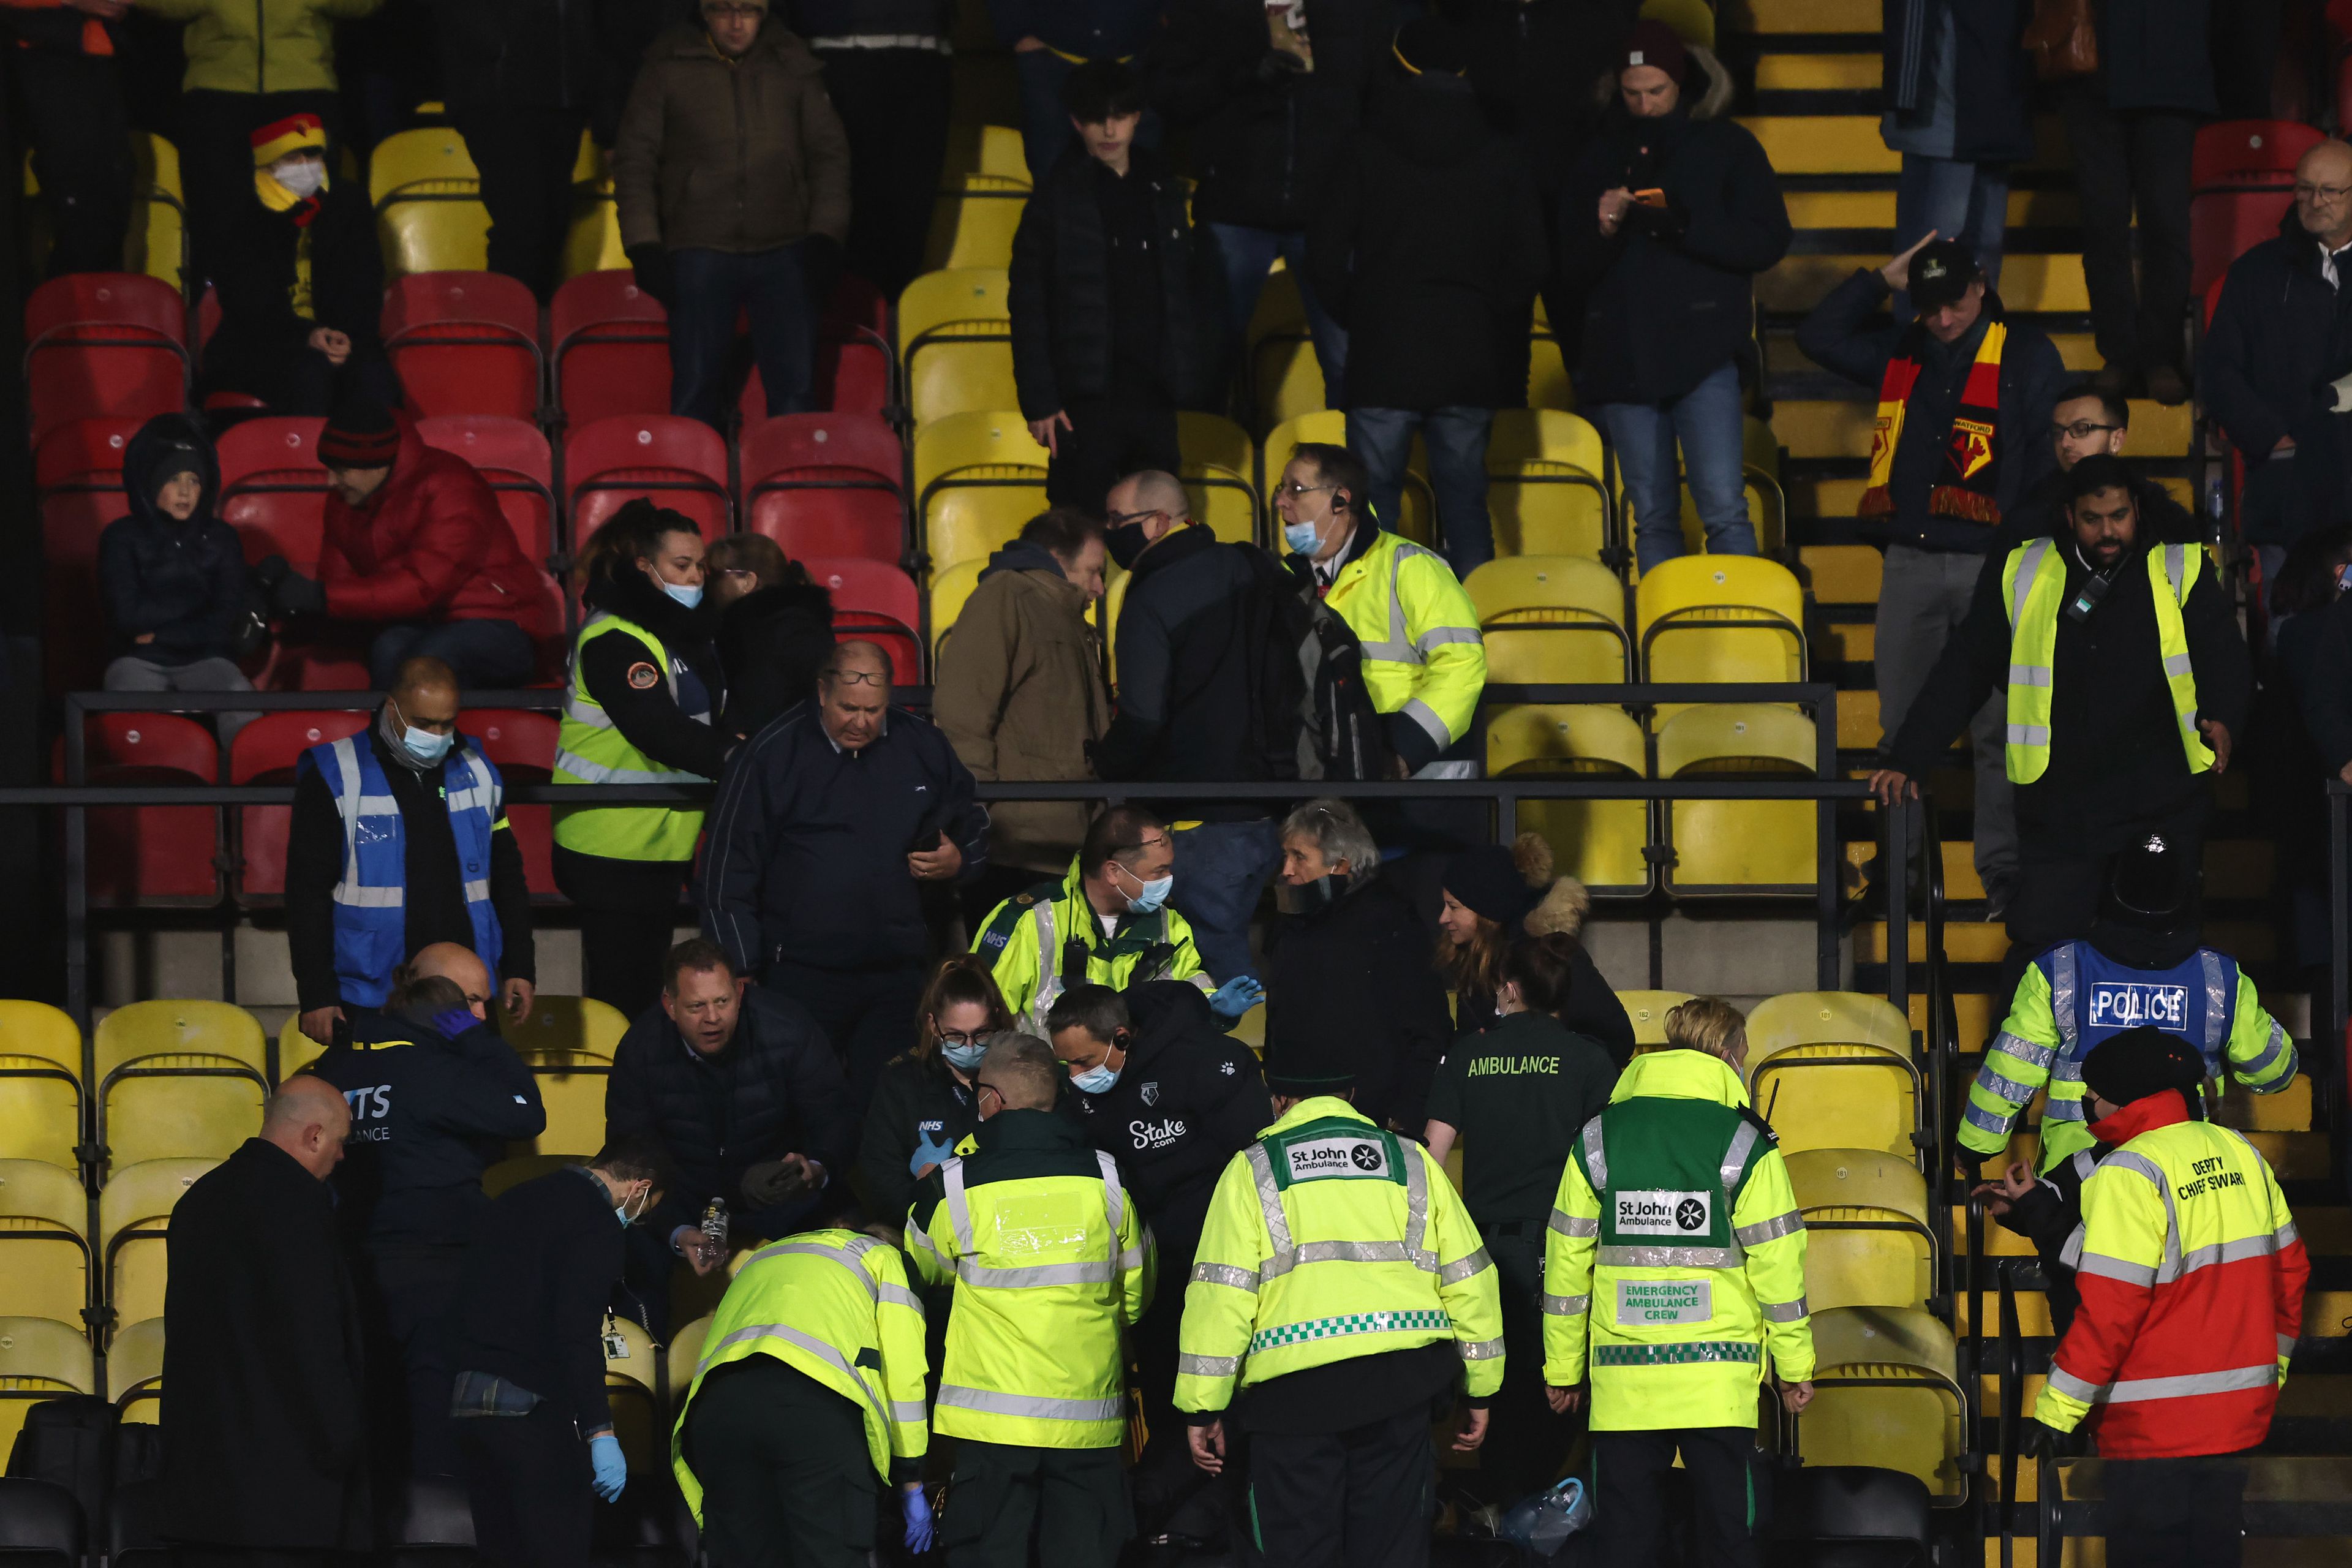 A Watford–Chelsea mérkőzésen rosszul lett az egyik drukker, szívrohamot kapott, újra kellett éleszteni /Fotó: Getty Images